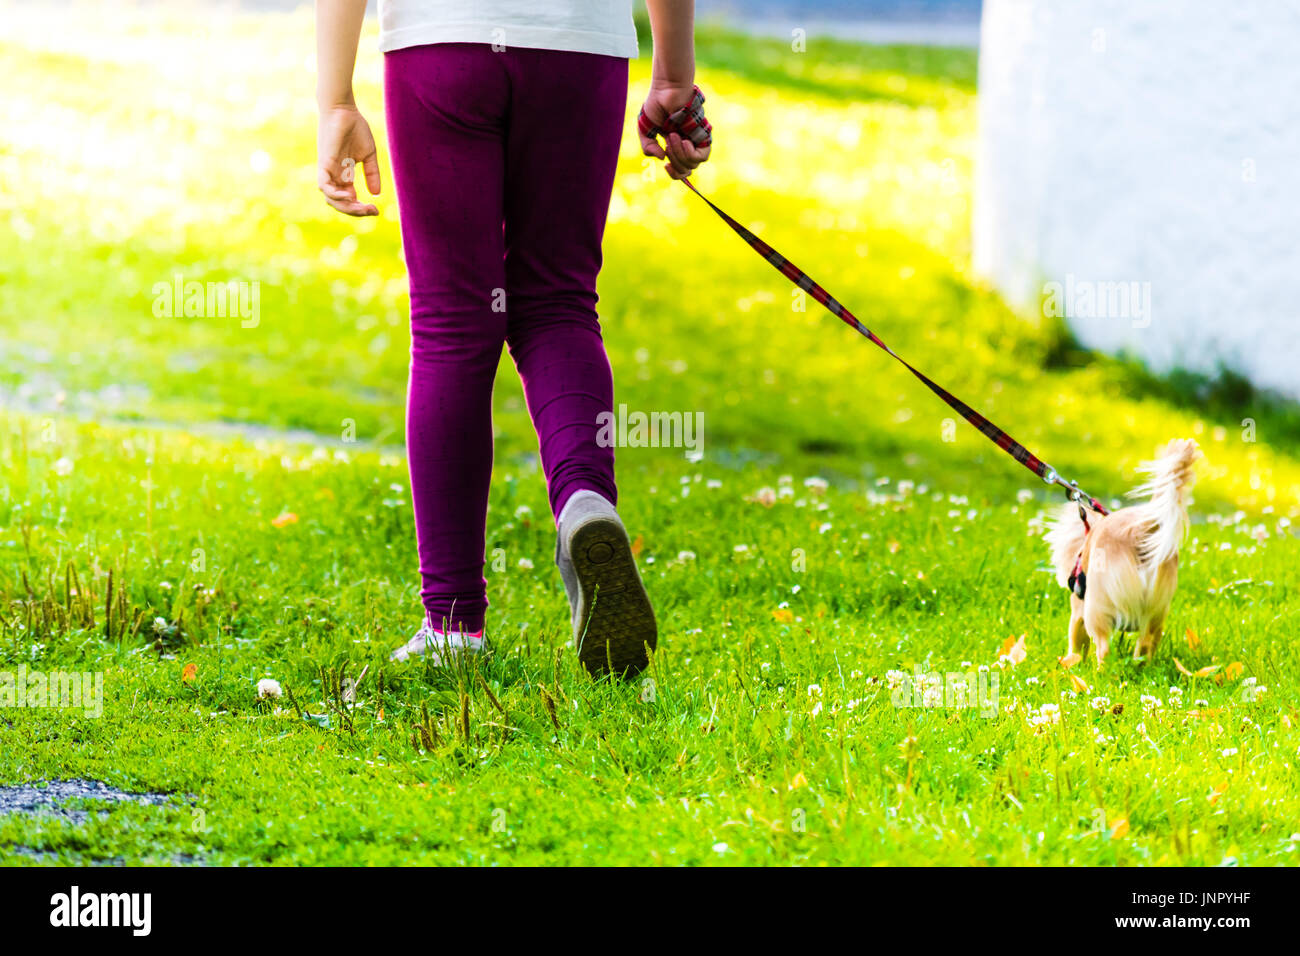 Giovane ragazza è sulla passeggiata con il cane piccolo sull'erba. La luce del sole nella vista. Foto Stock